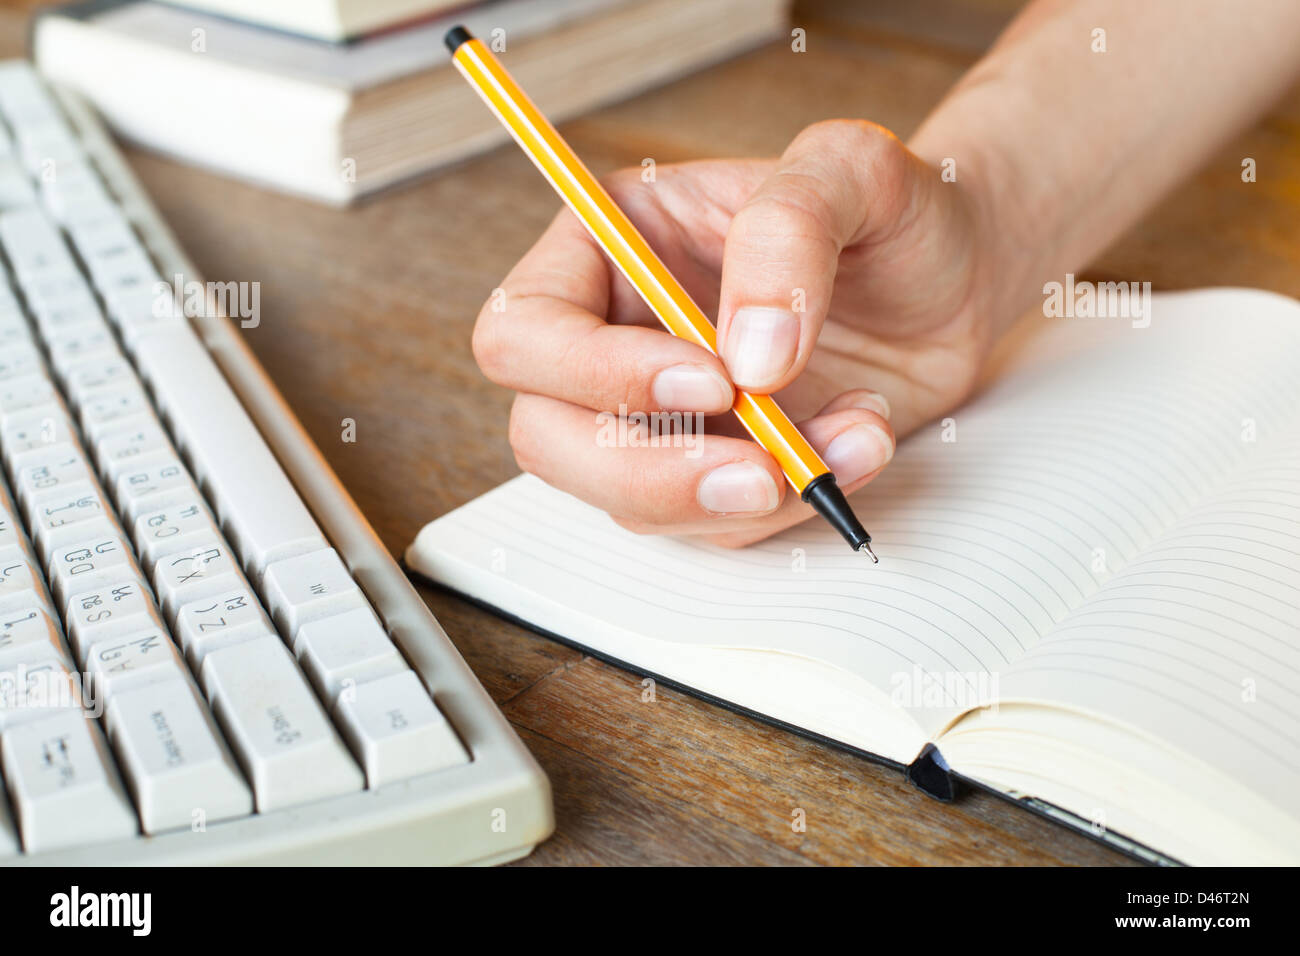 Giovane donna mani scrive una penna in un notebook, la tastiera del computer e una pila di libri in background Foto Stock